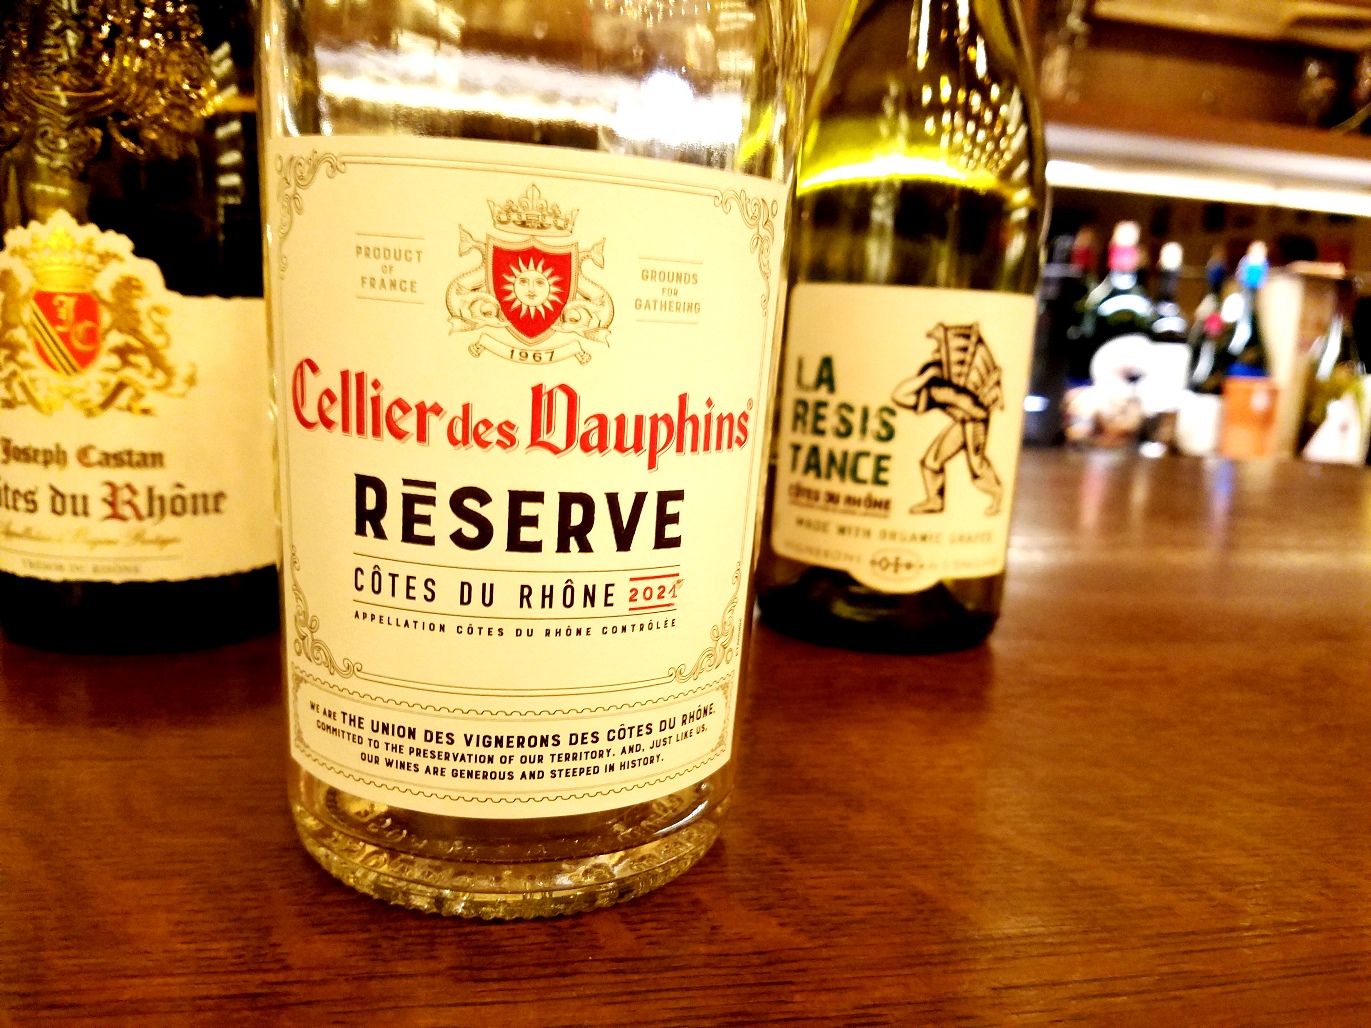 Cellier des Dauphins, Reserve Côtes du Rhône Rosé 2021, Rhone, France, Wine Casual